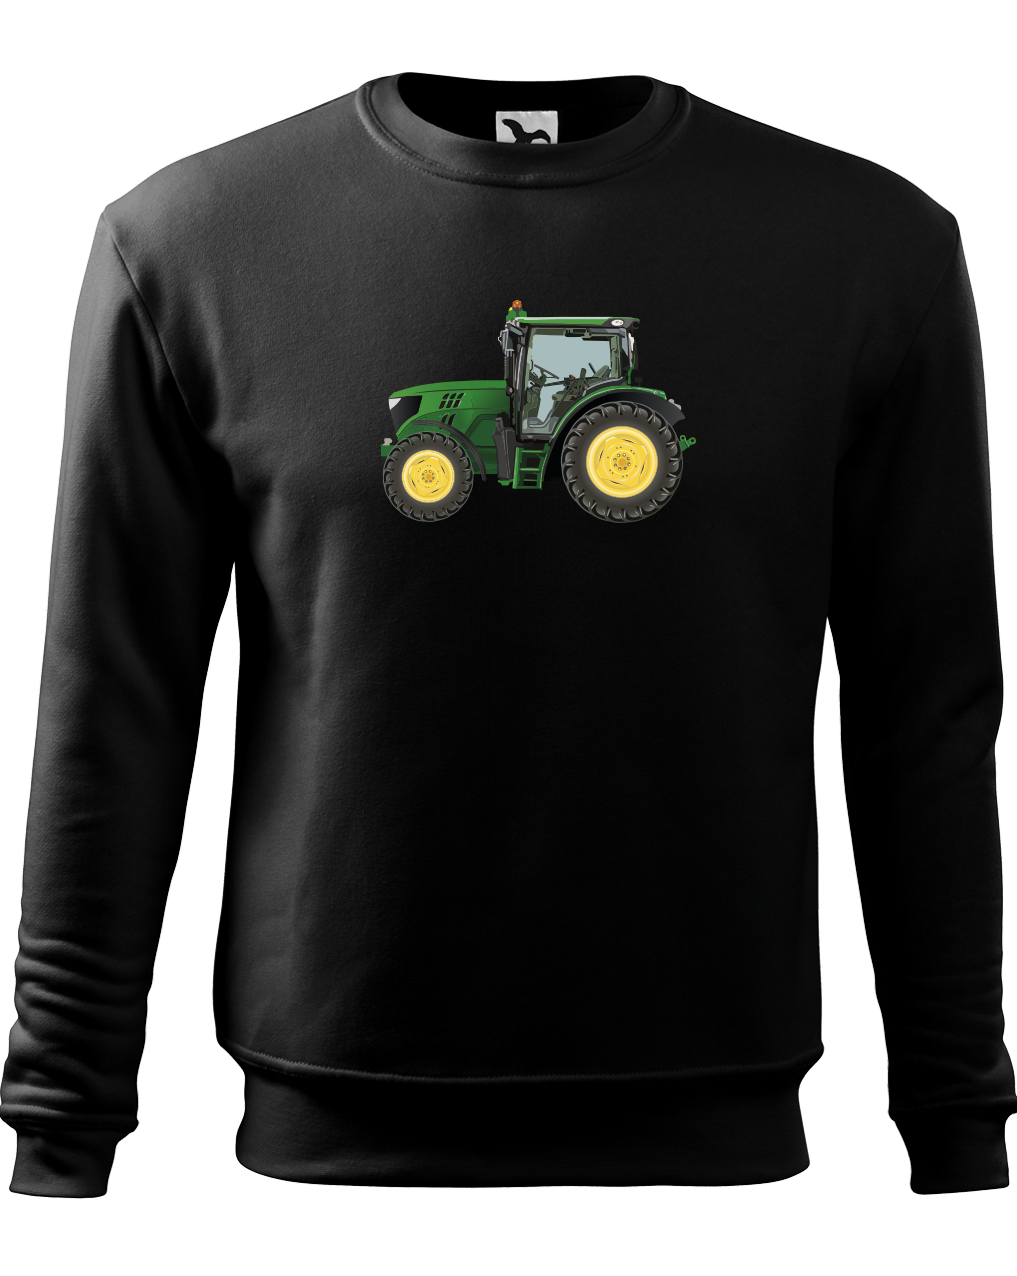 Mikina s traktorem - Zelený traktor Velikost: 3XL, Barva: Černá